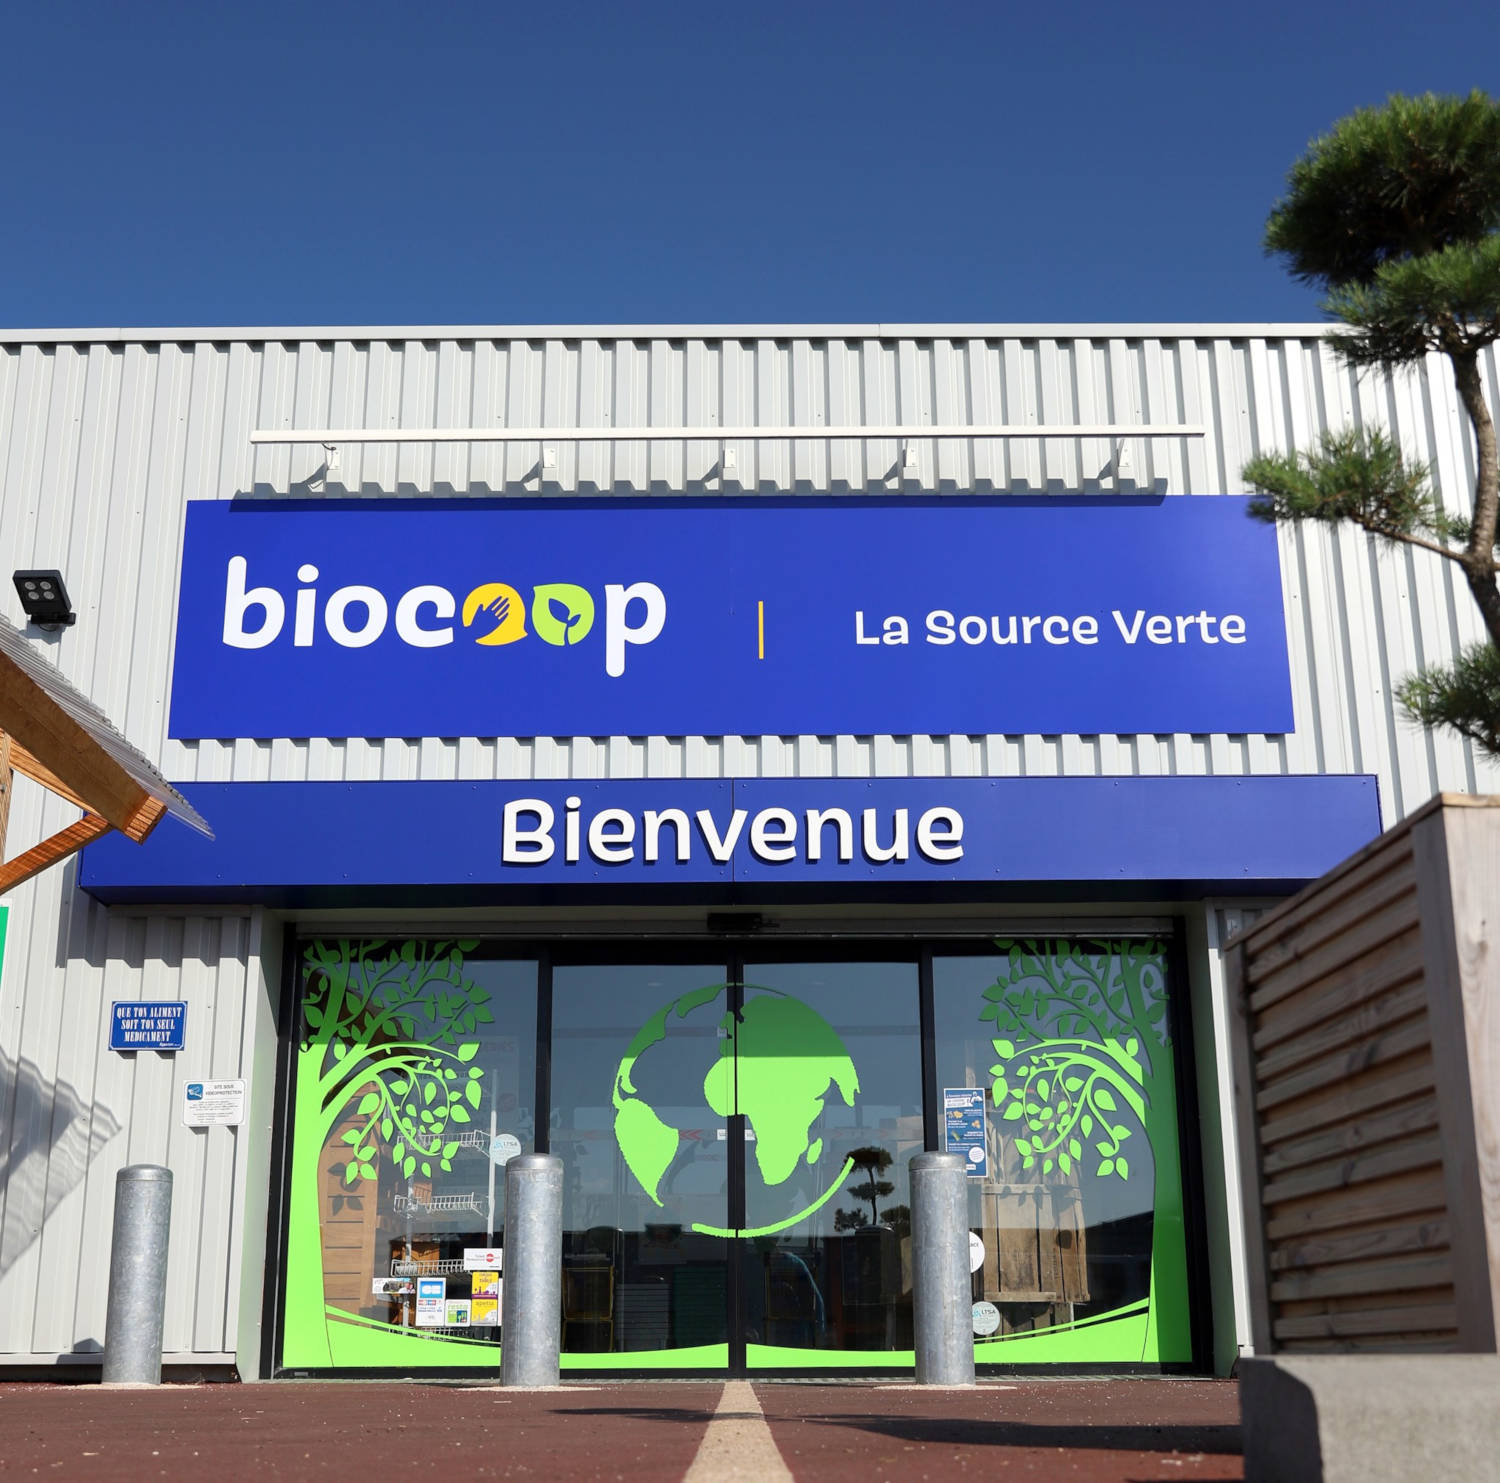 Biocoop La Source Verte